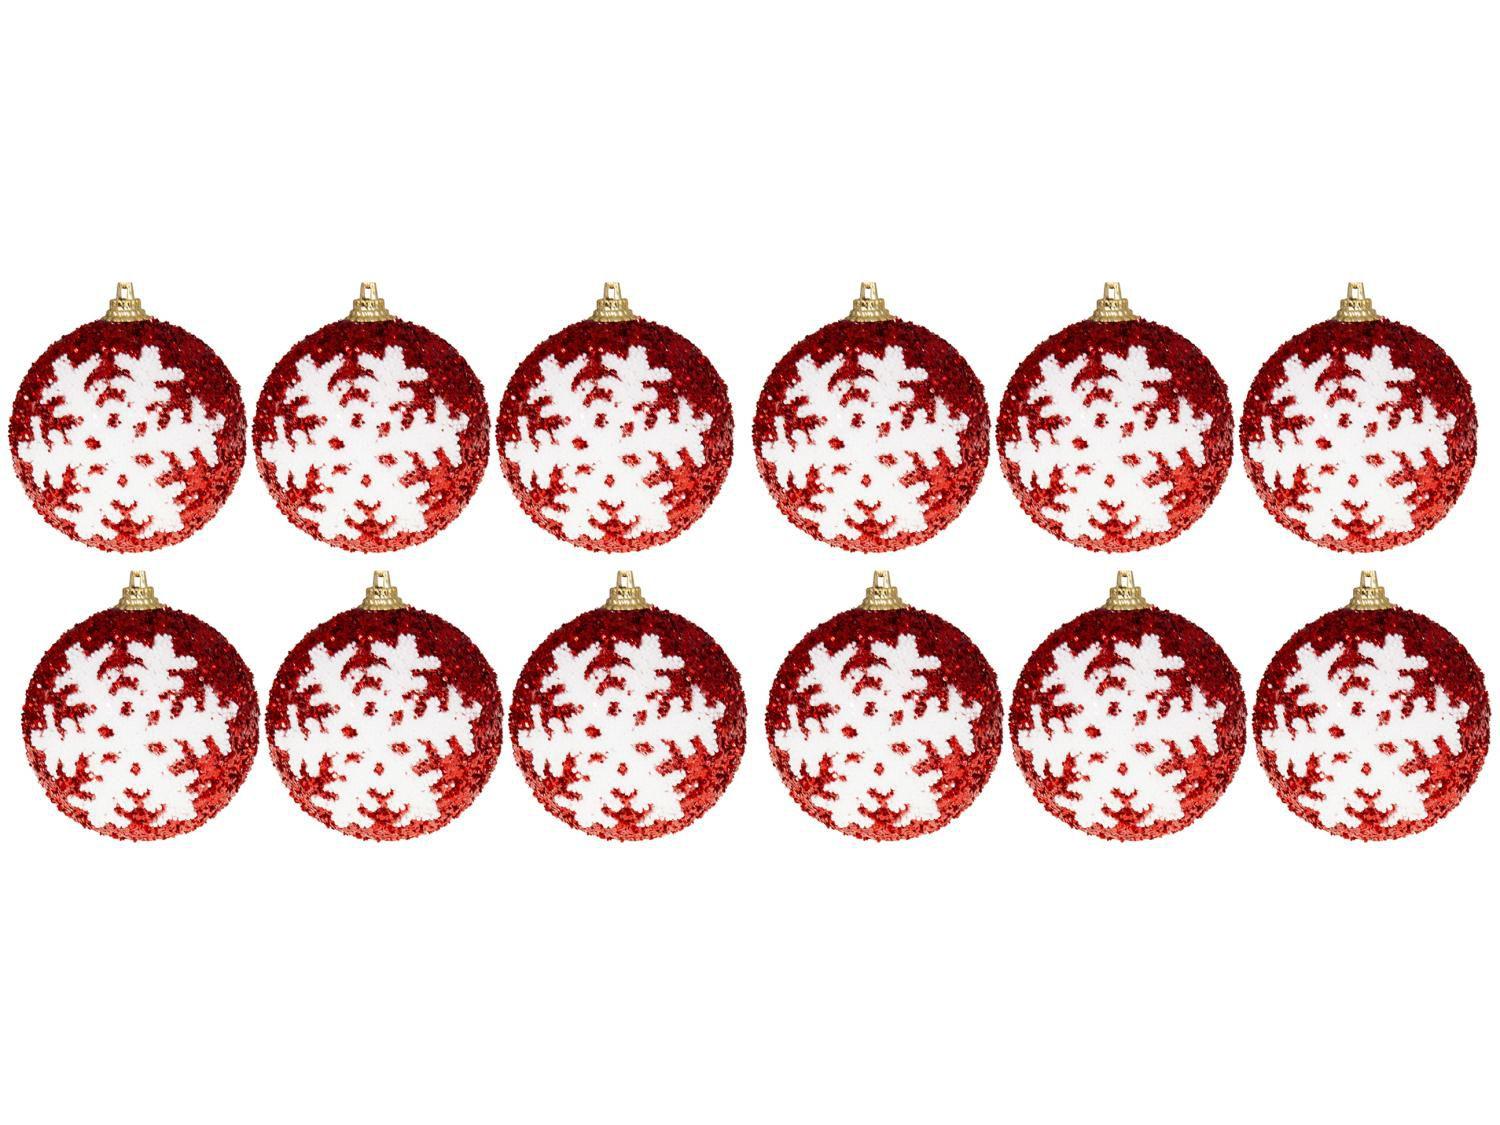 Kit Bola de Natal Vermelha e Branca com Glitter - NATAL051M Casambiente 7cm 12 Unidades